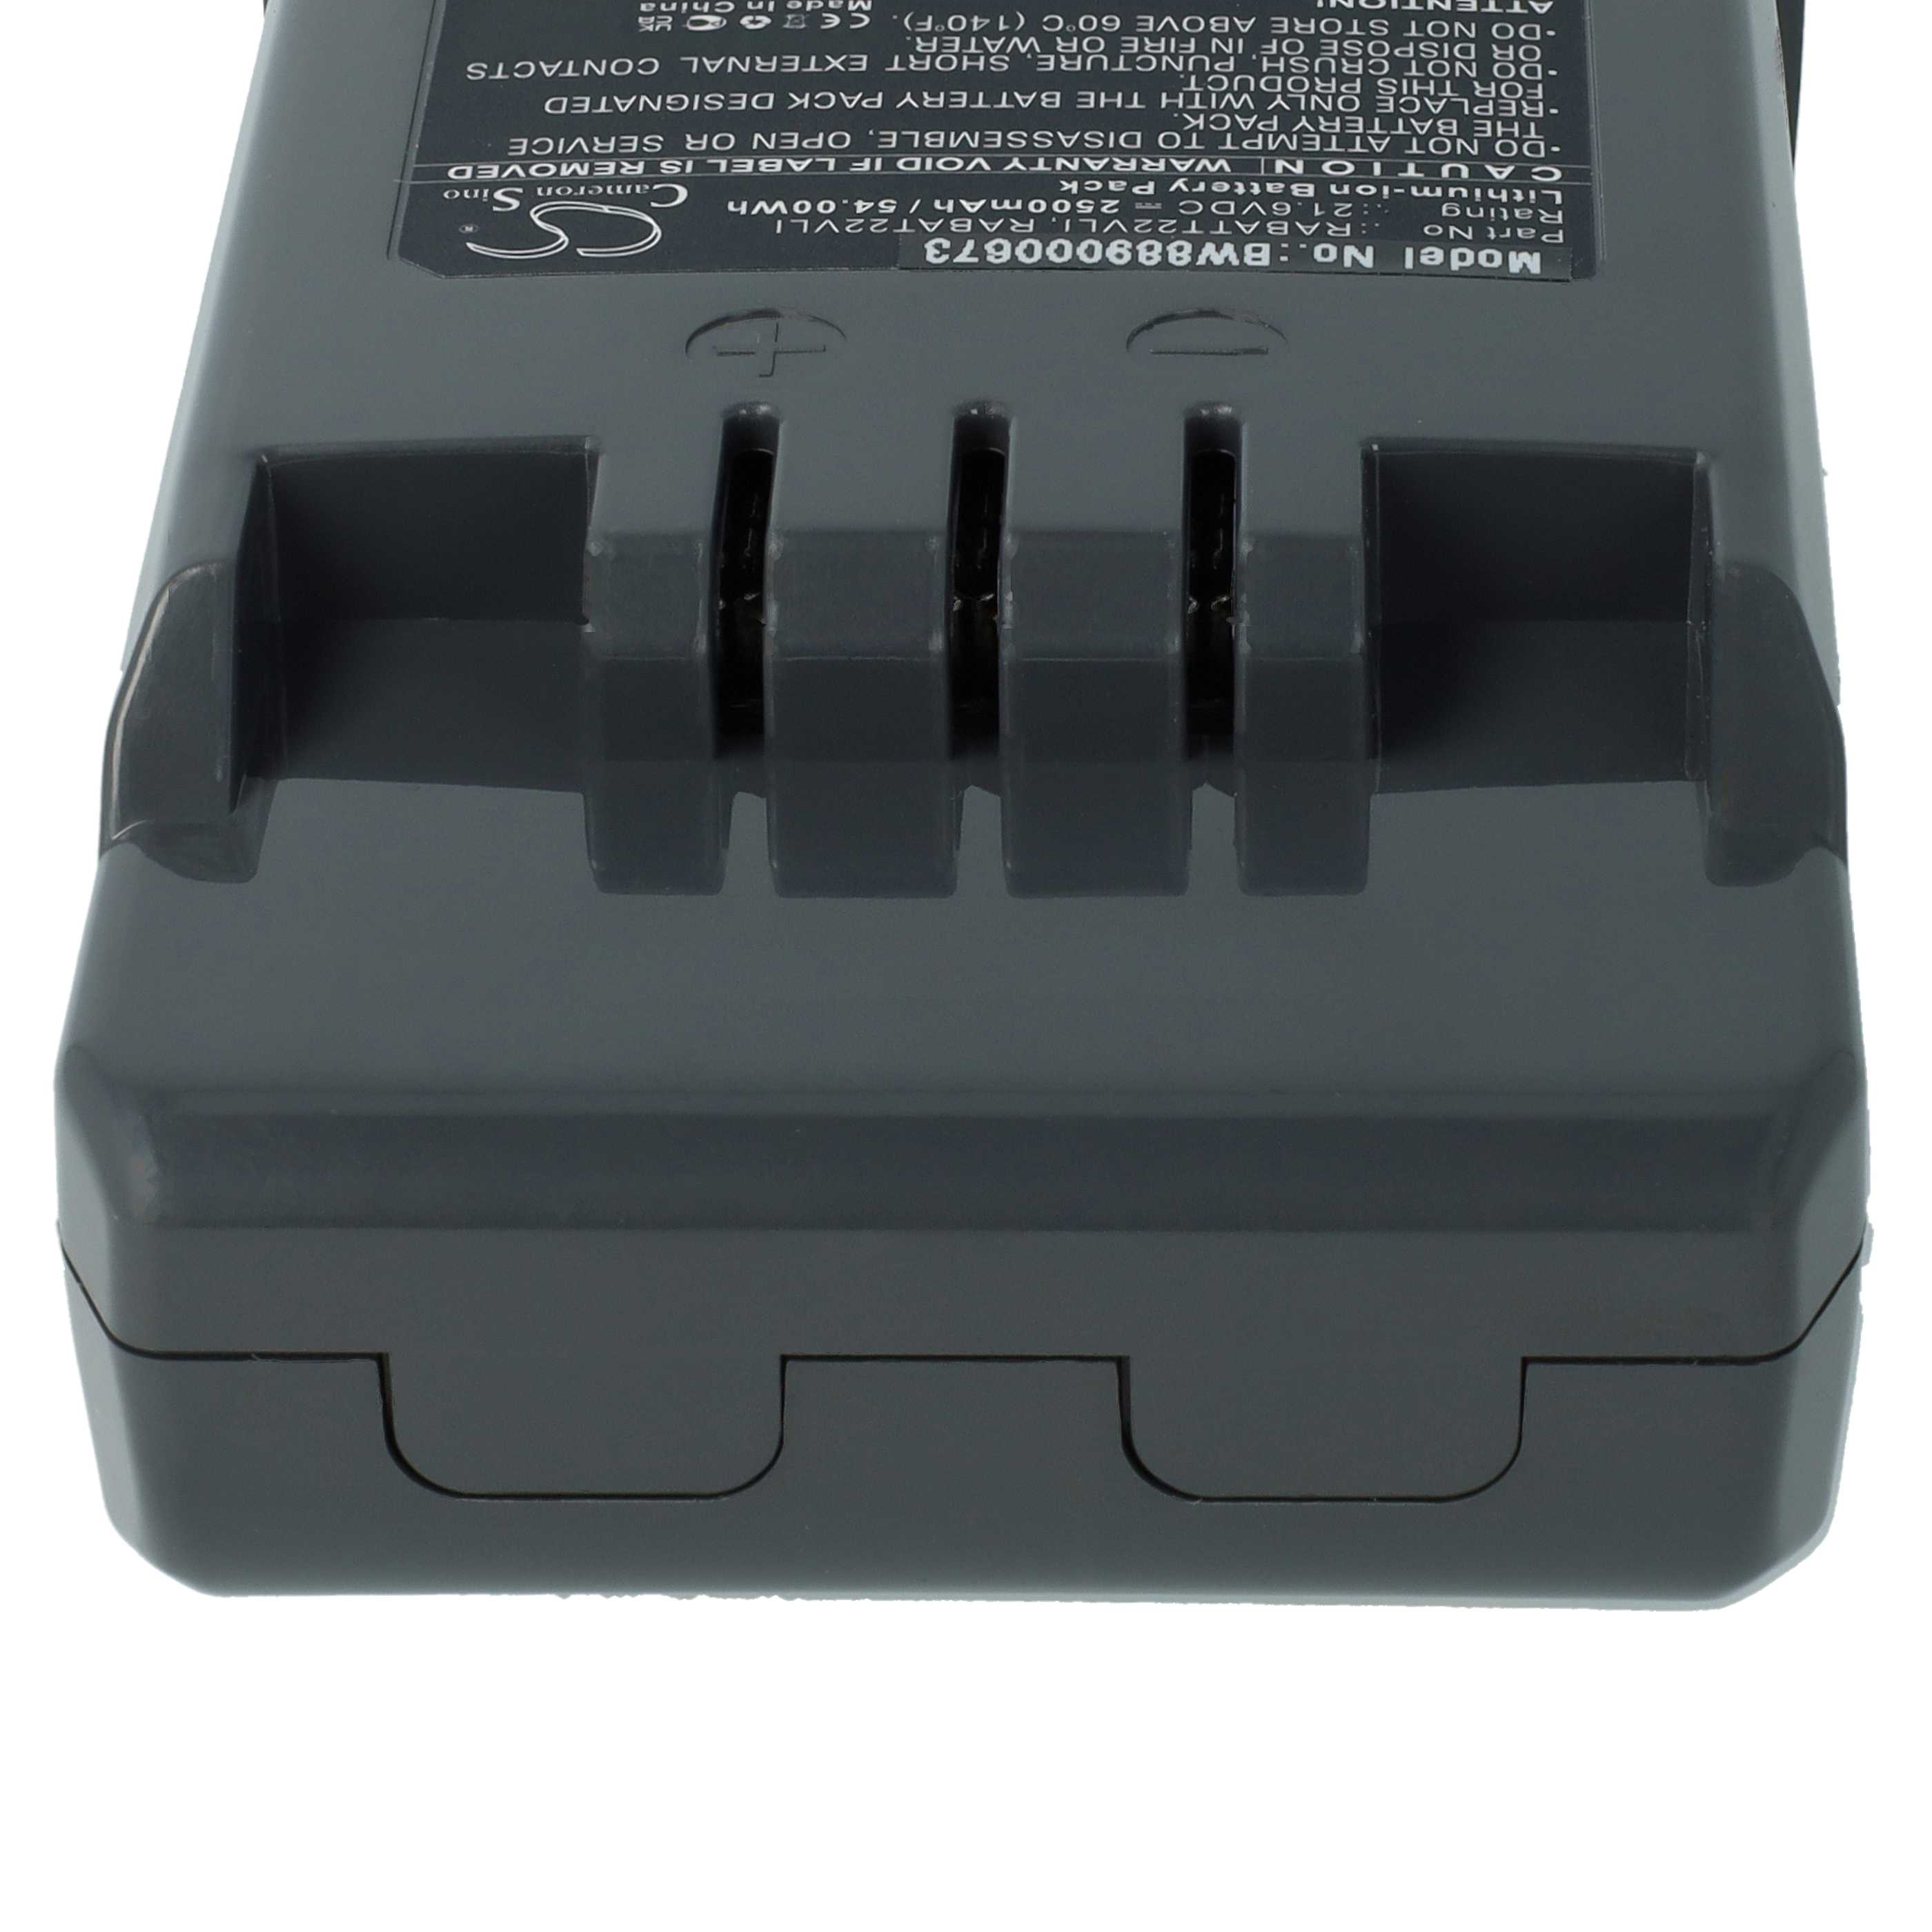 Batería reemplaza Hoover RABAT22VLI, 6.20.40.01-0, 48023809 para aspiradora Hoover - 2500 mAh 21,6 V Li-Ion